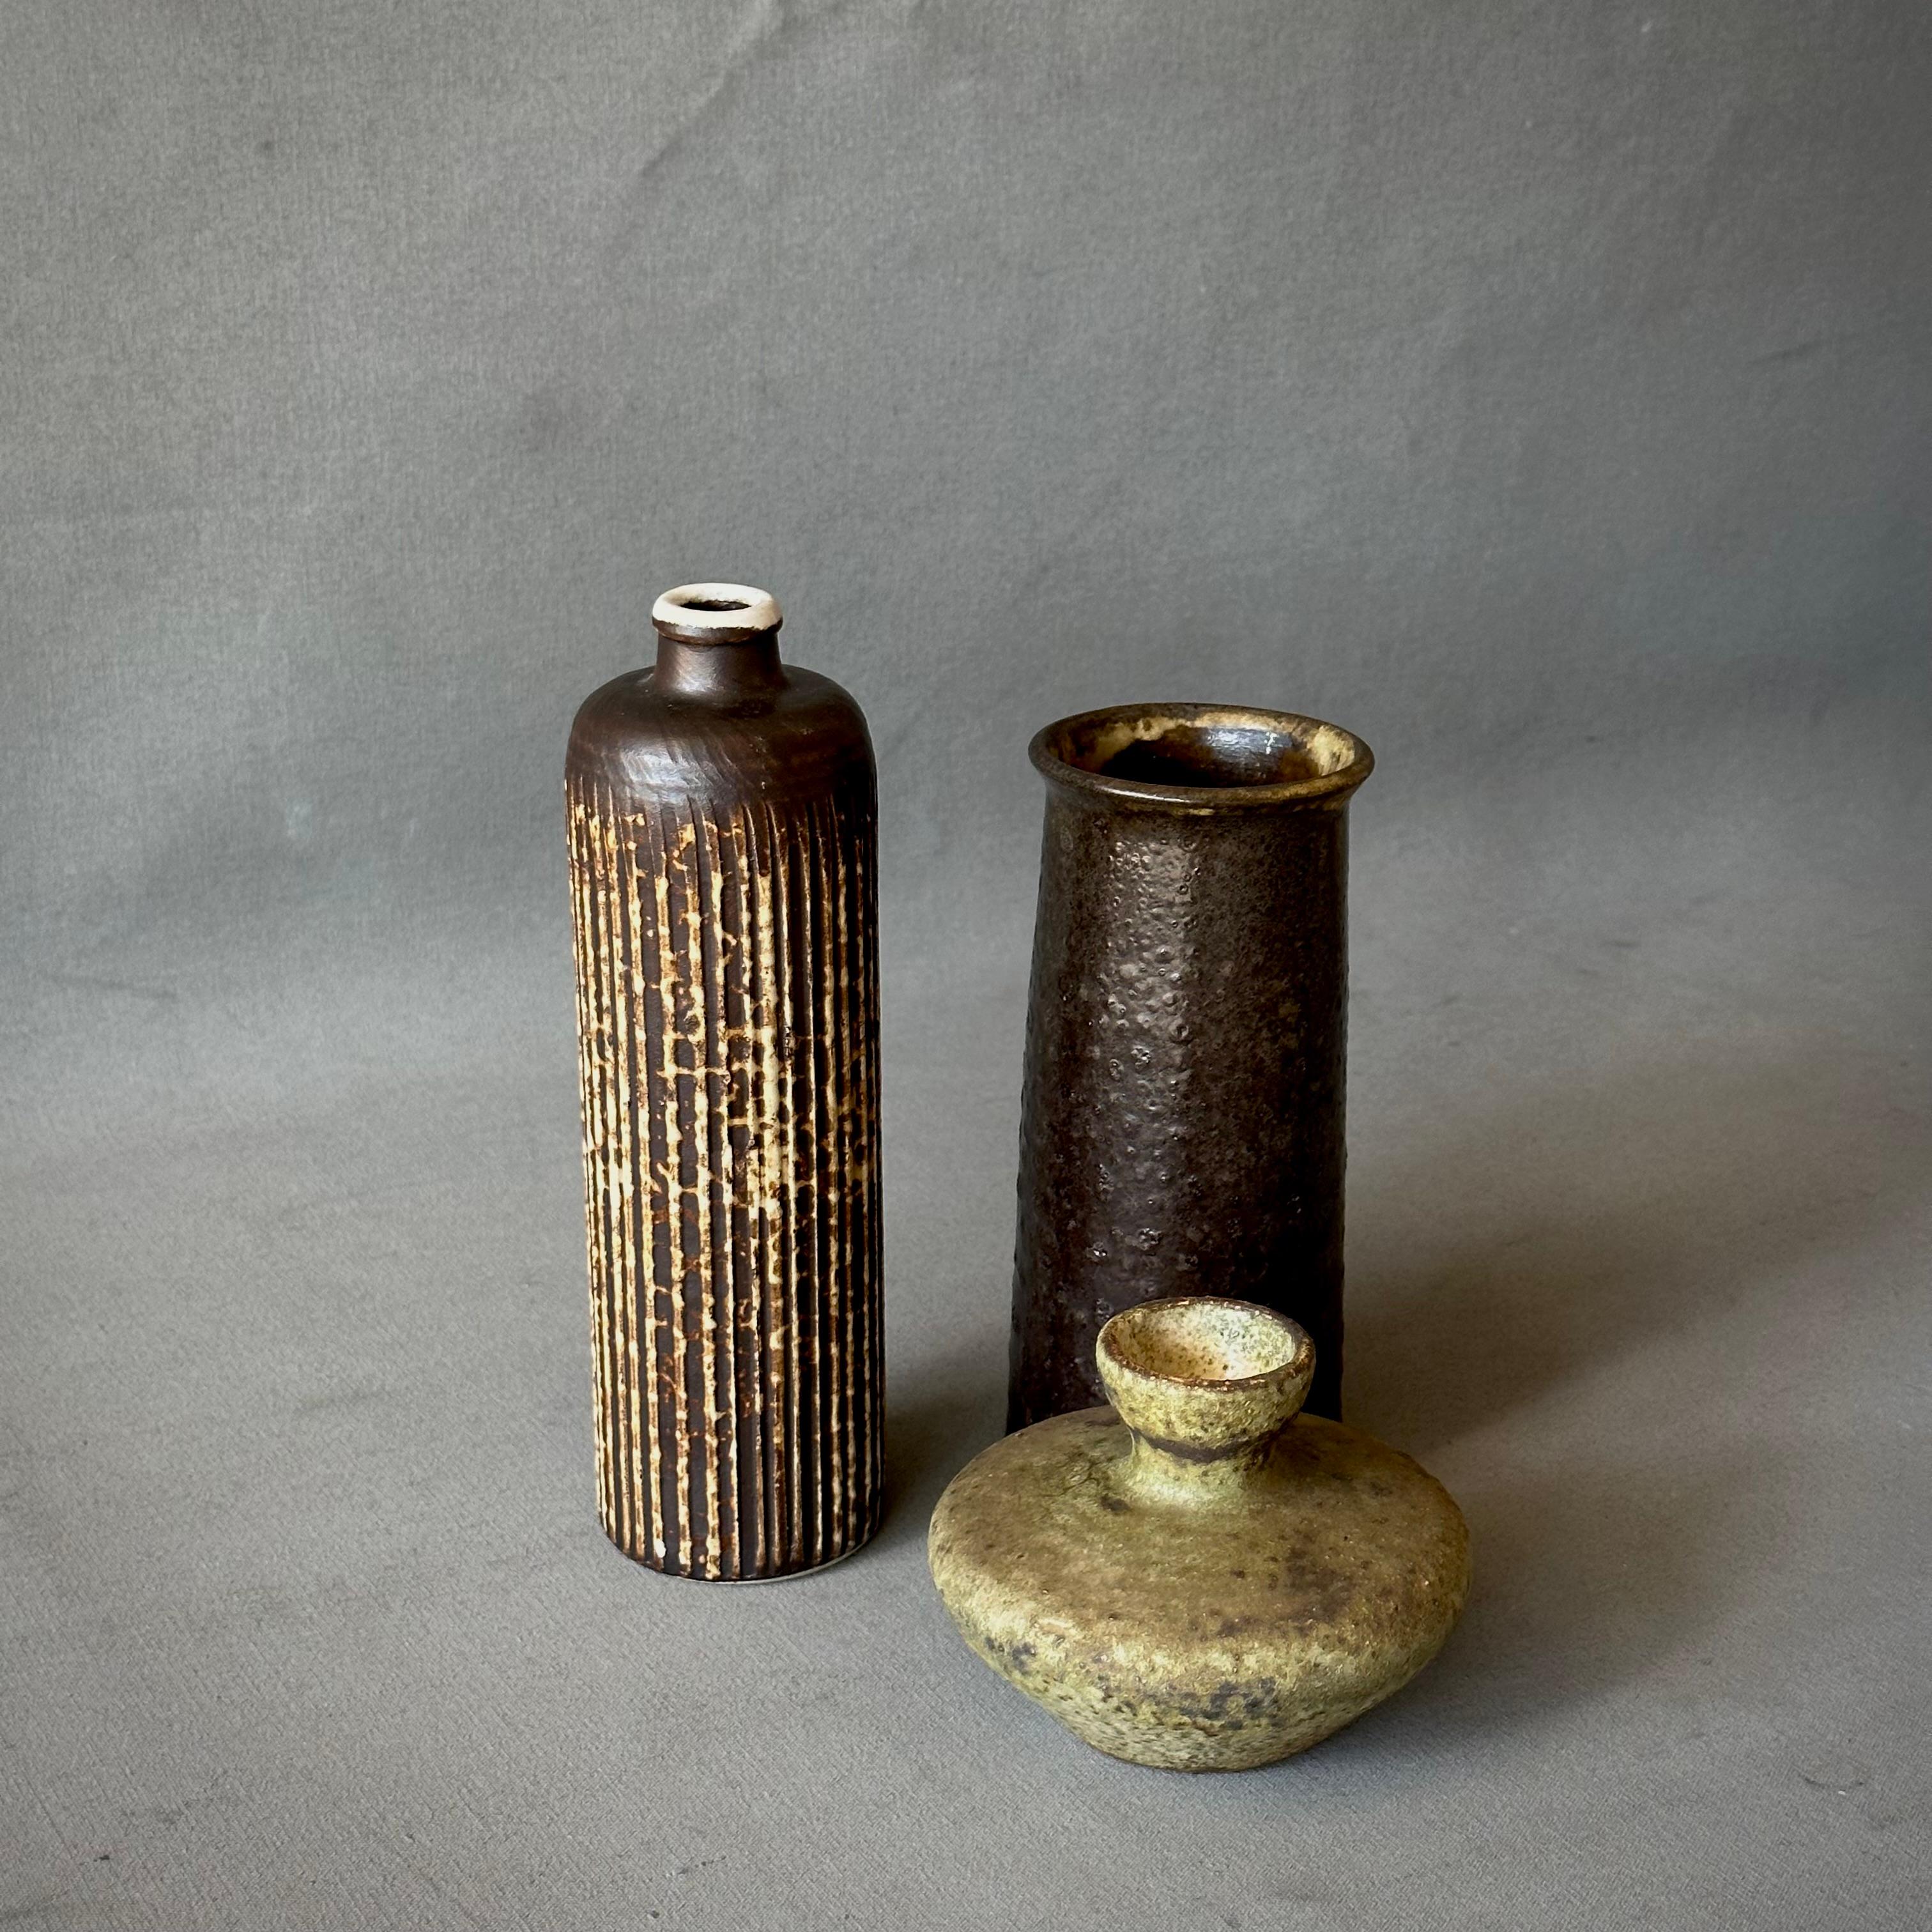 Collectional de trois vases en poterie de Studio dans les tons bruns de la terre.

Belgique, vers 1970

Dimensions les plus grandes : 4L x 4P x 8H